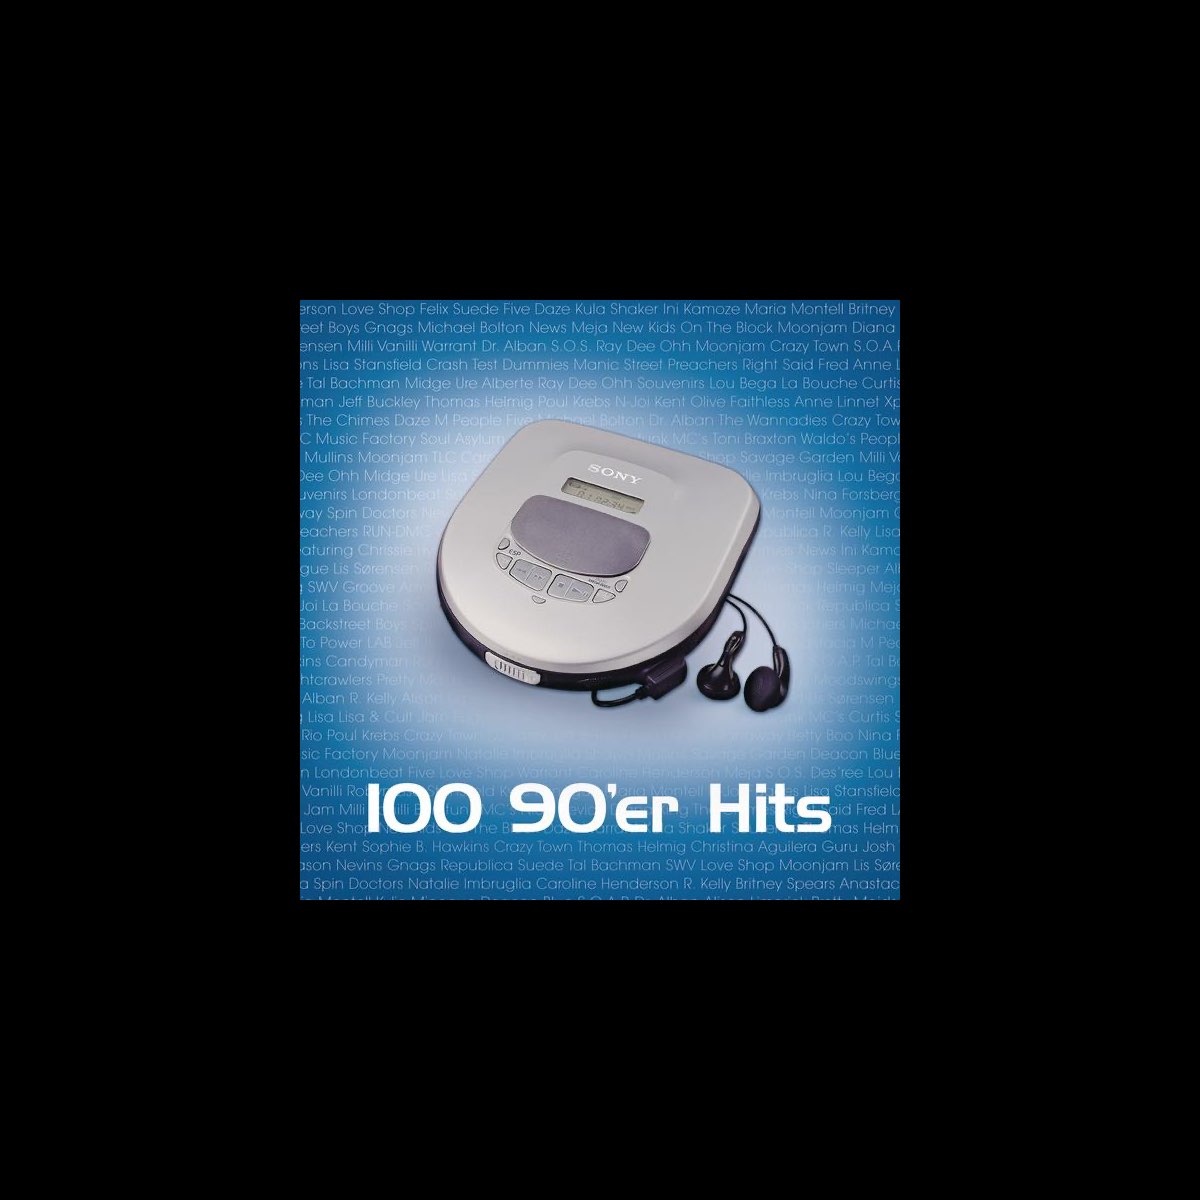 Vælg Vise dig Svømmepøl 100 90'er Hits af Various Artists på Apple Music